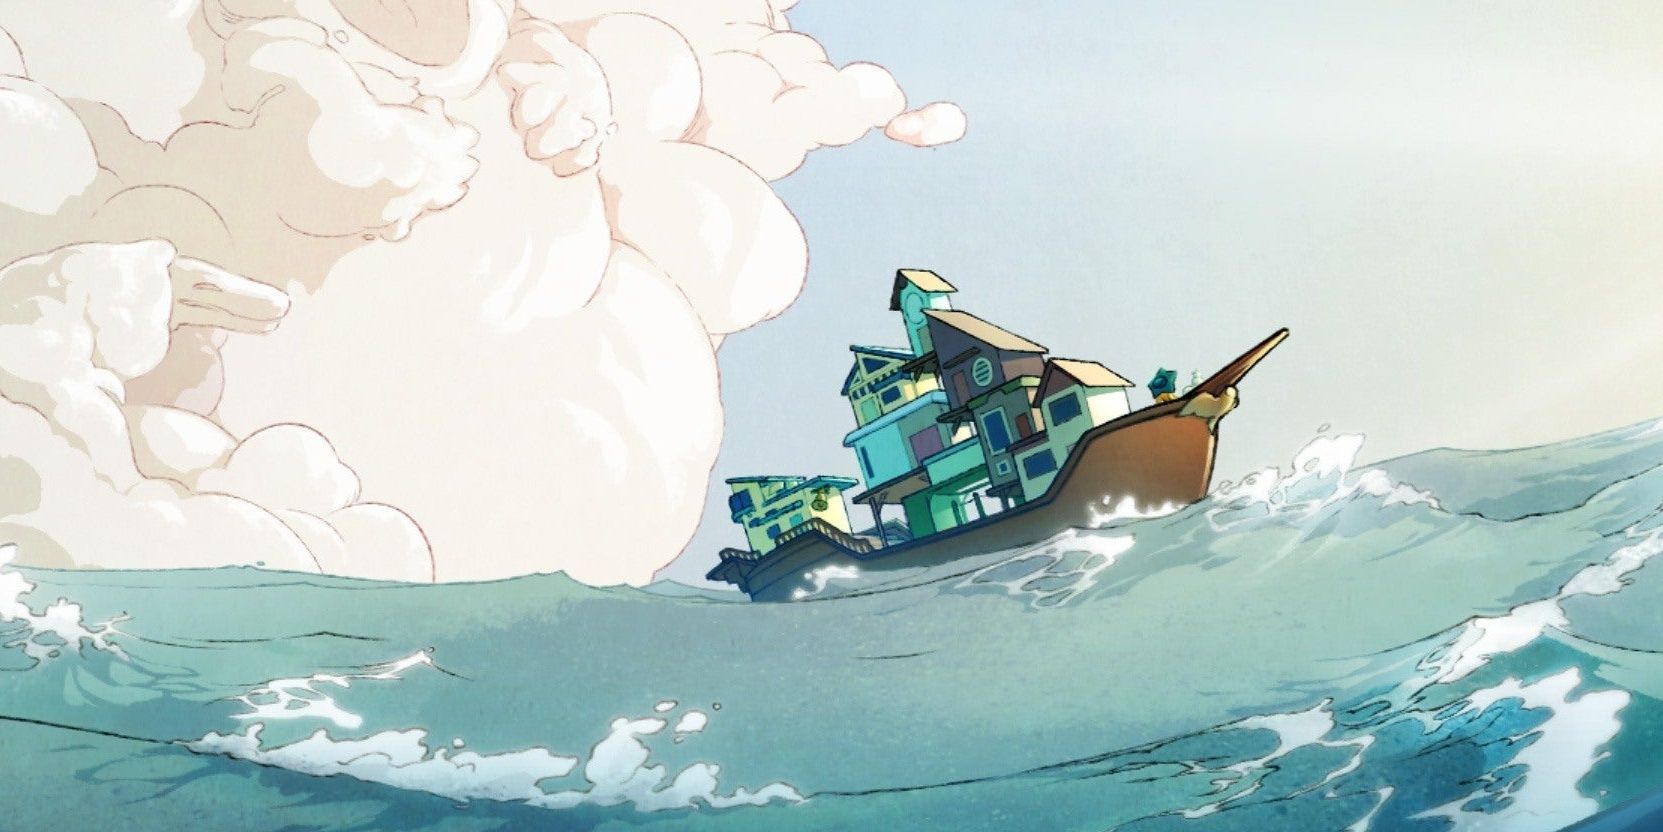 Spiritfarer Game Cover Boat On Ocean